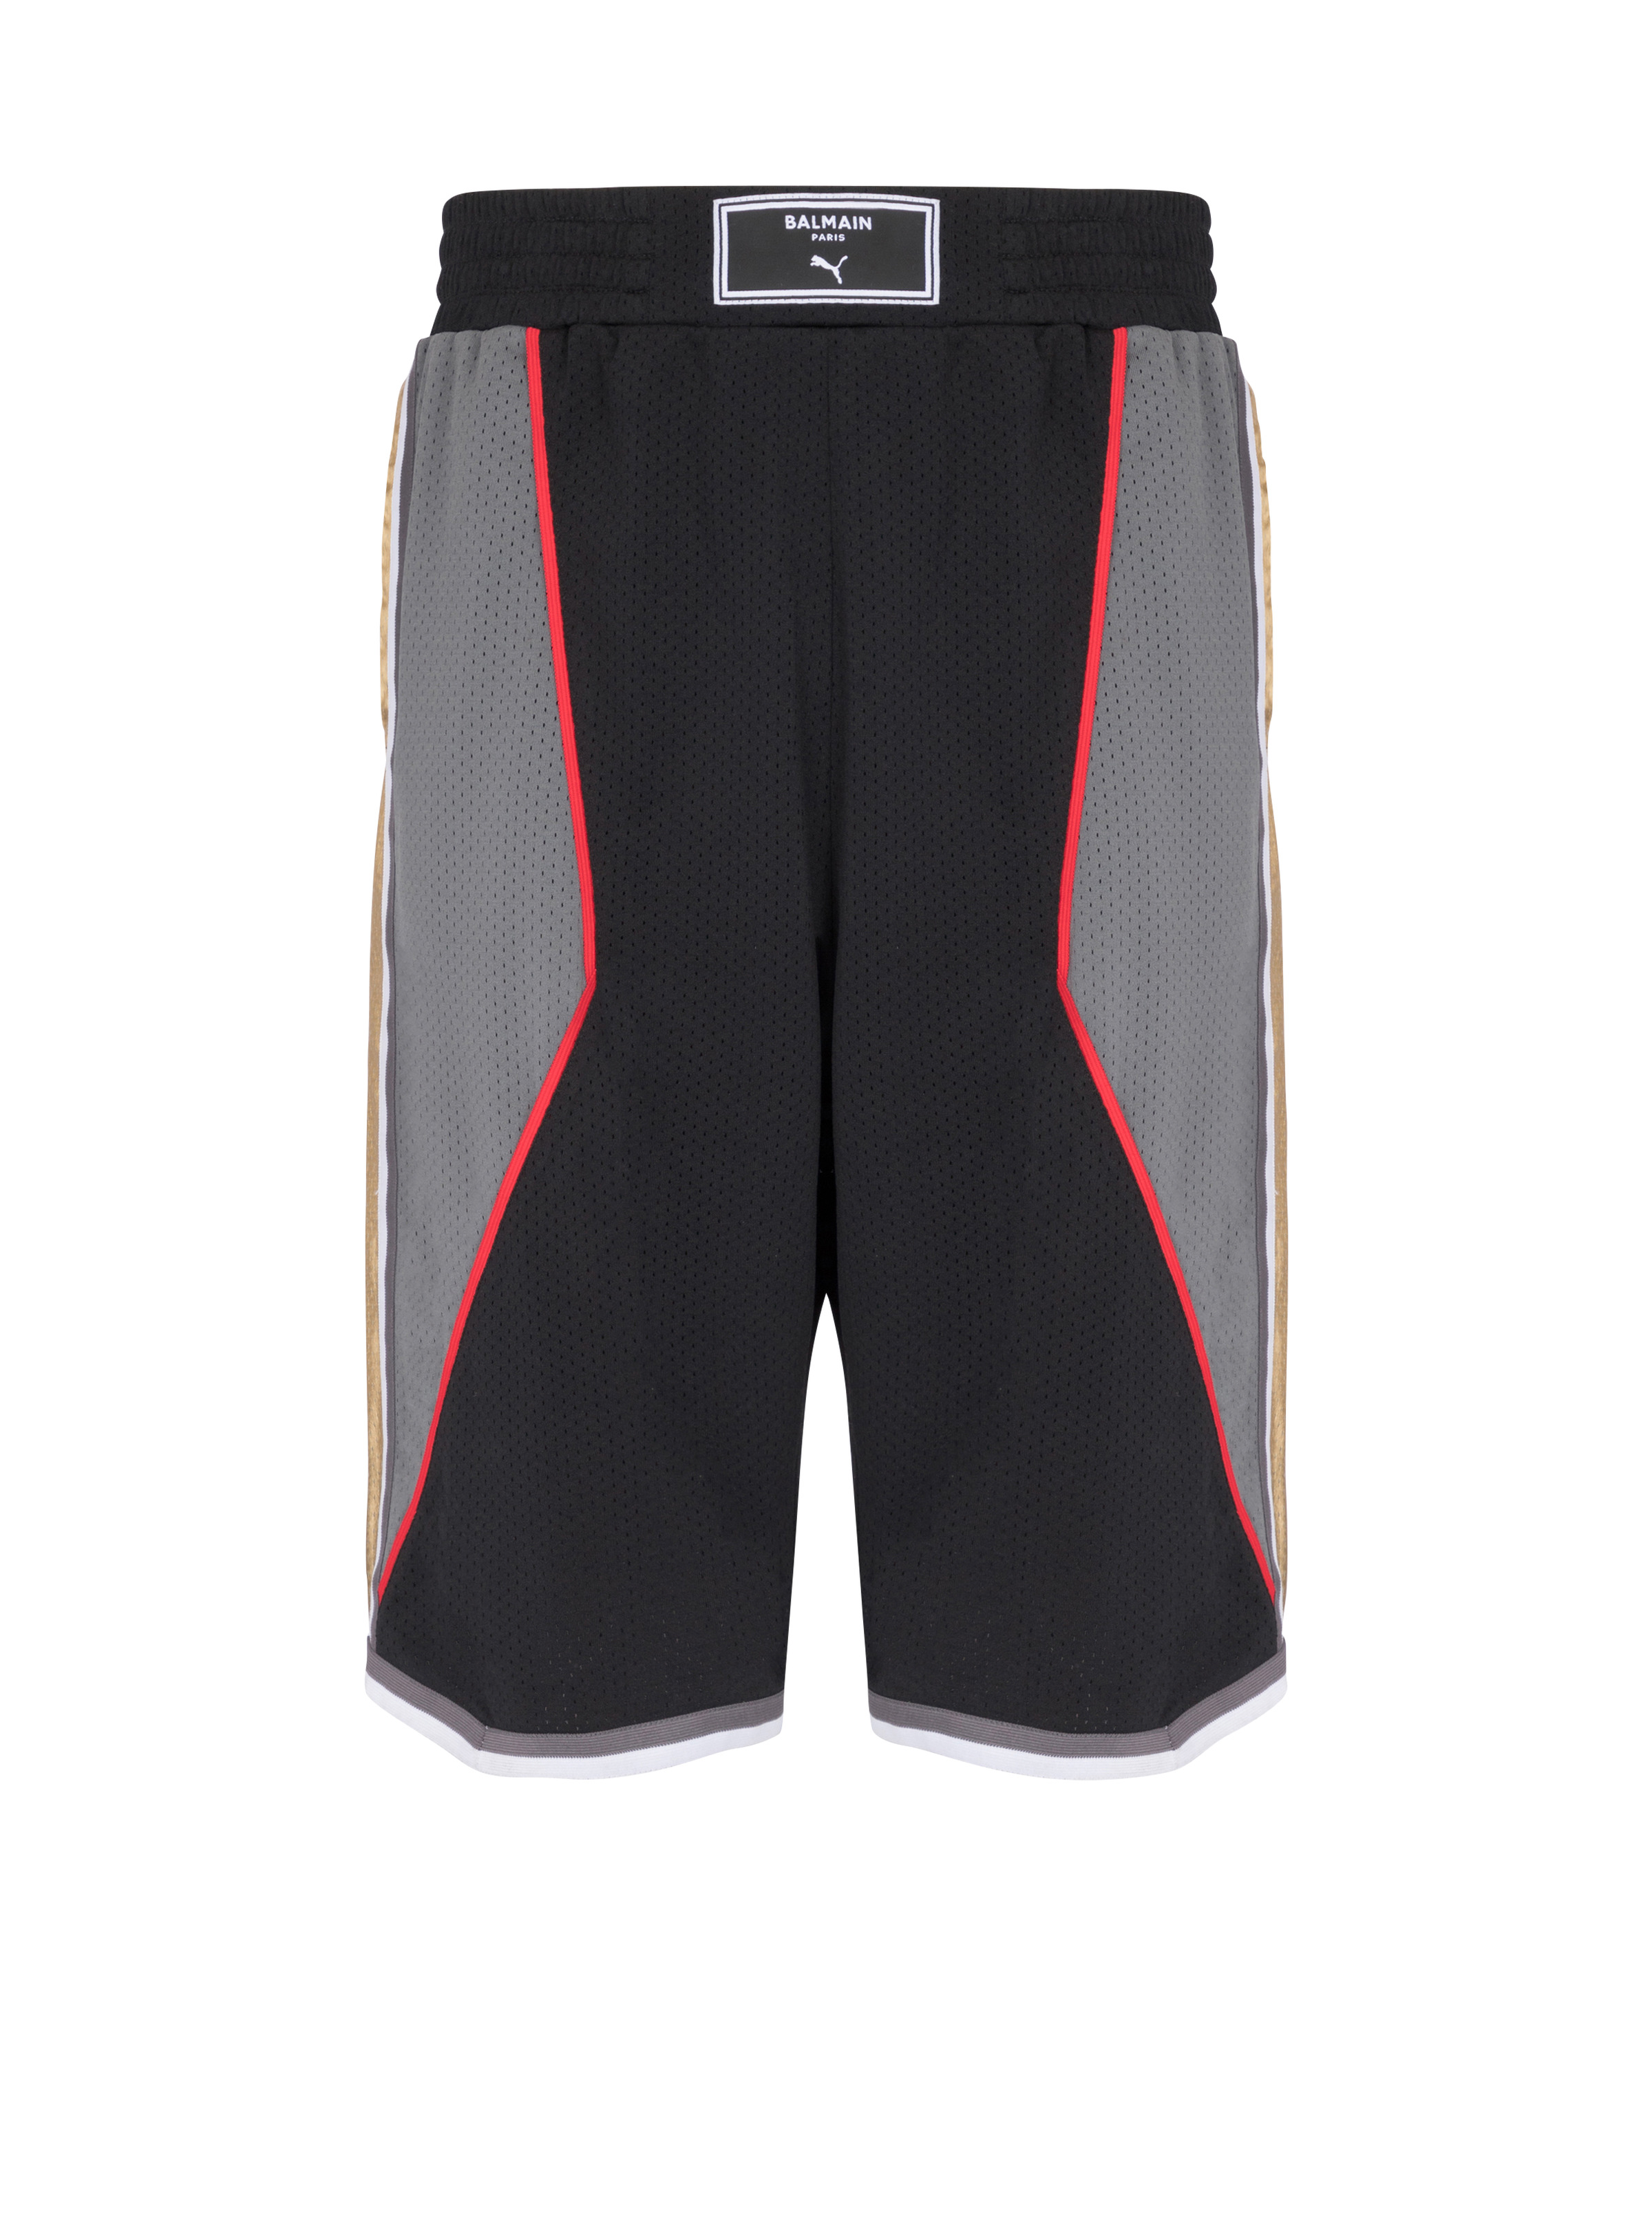 Balmain x Puma - Basketball shorts - 1